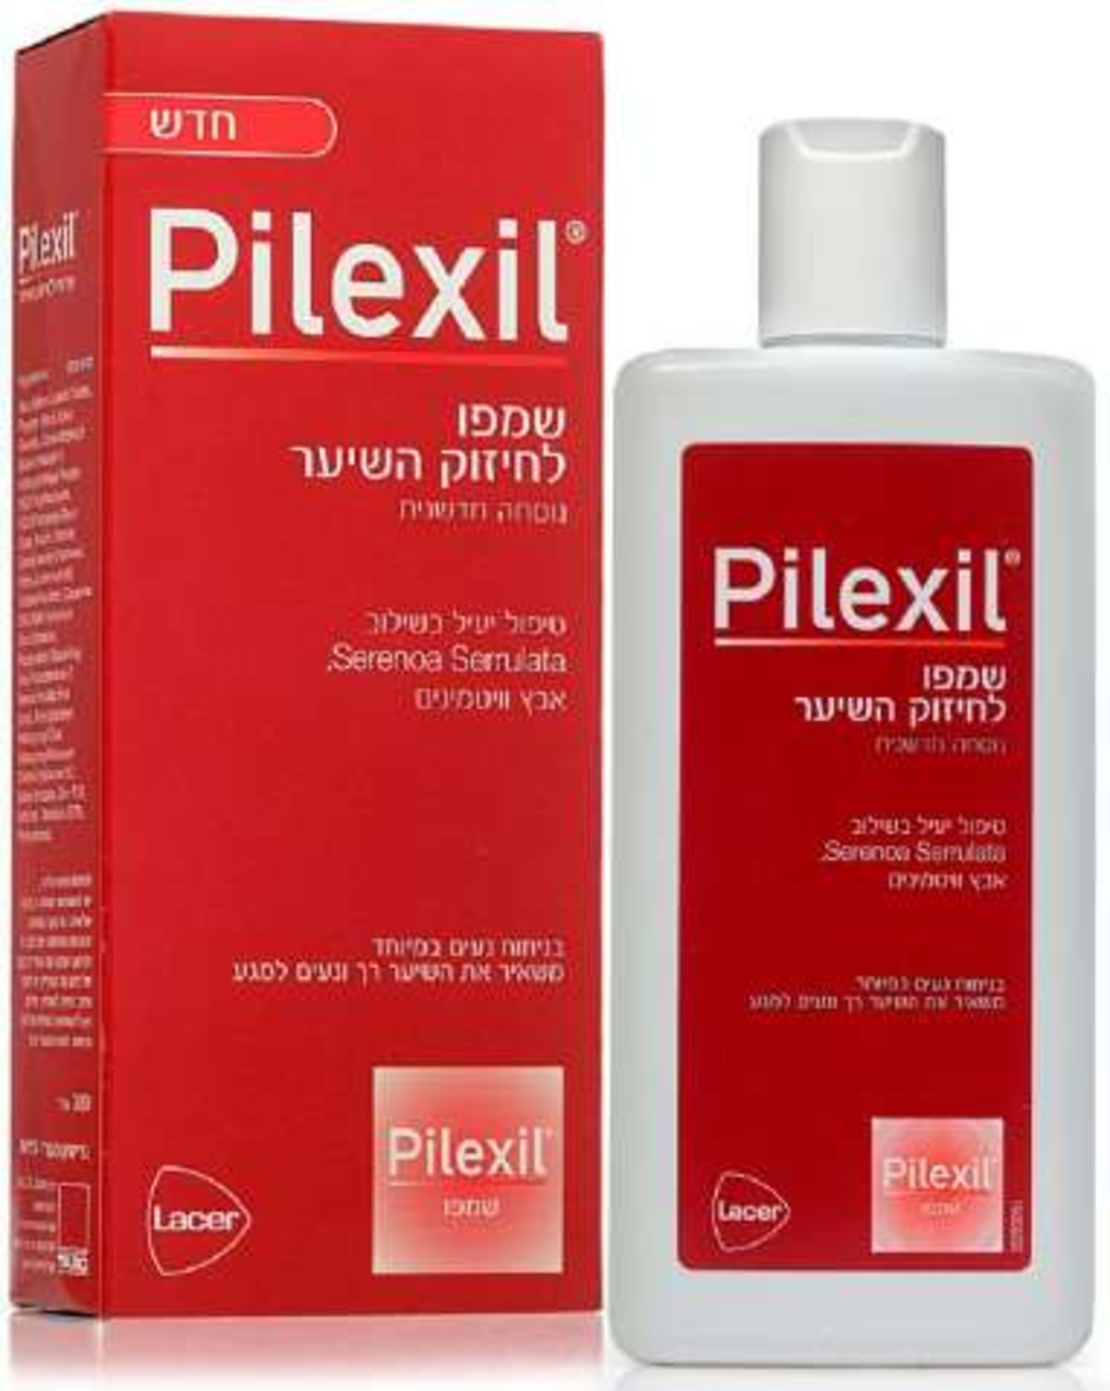 פילקסיל שמפו - שמפו לחיזוק השיער Pilexil Shampoo